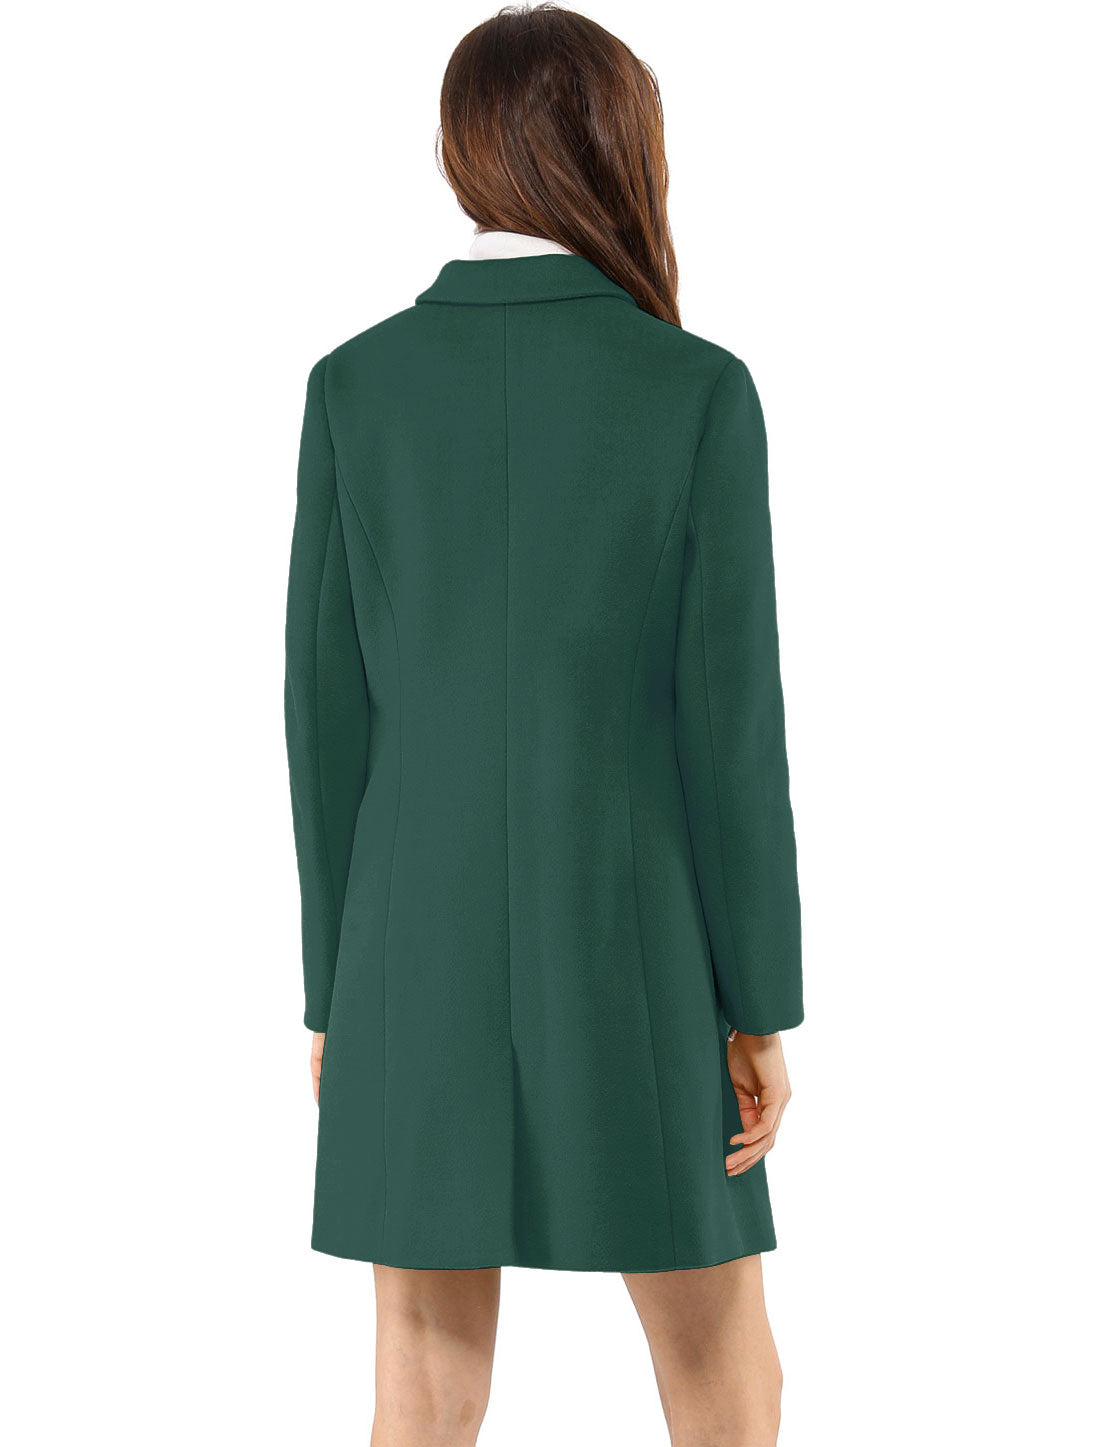 Allegra K Notched Lapel Single Breasted Outwear Winter Coat Green